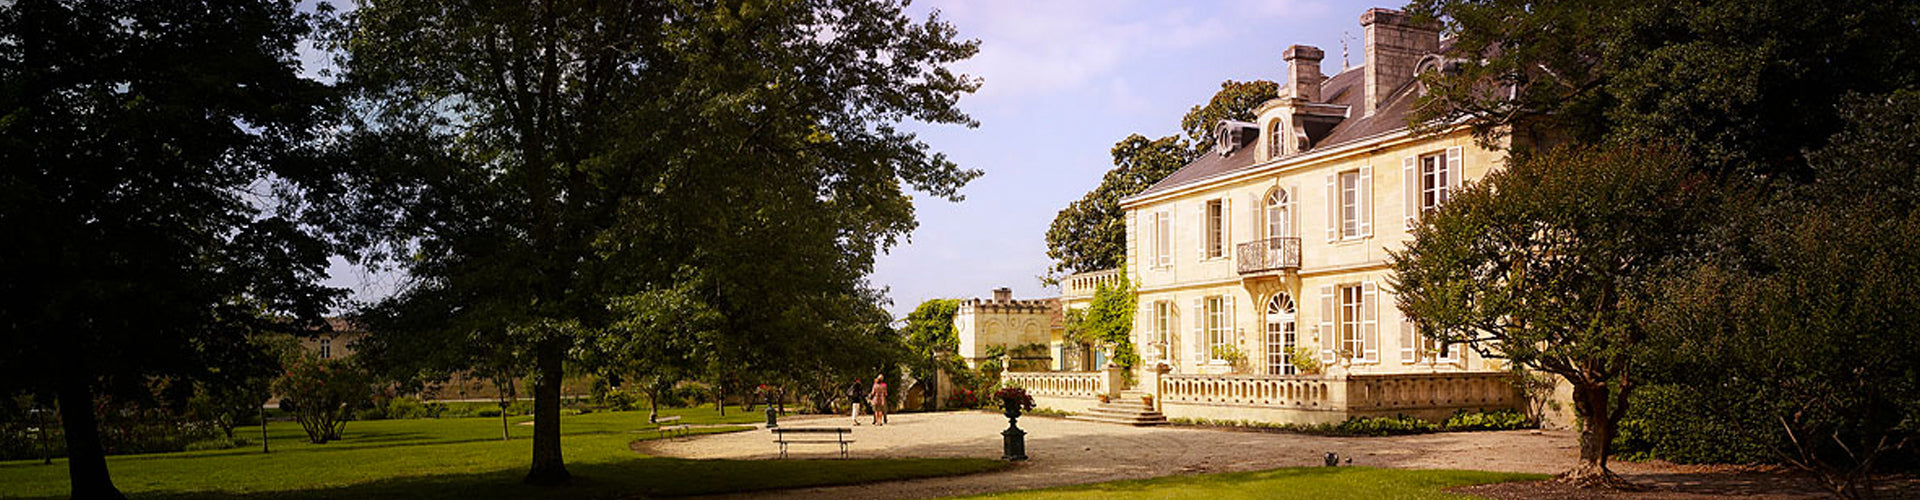 The Château Kirwan in Margaux, Bordeaux